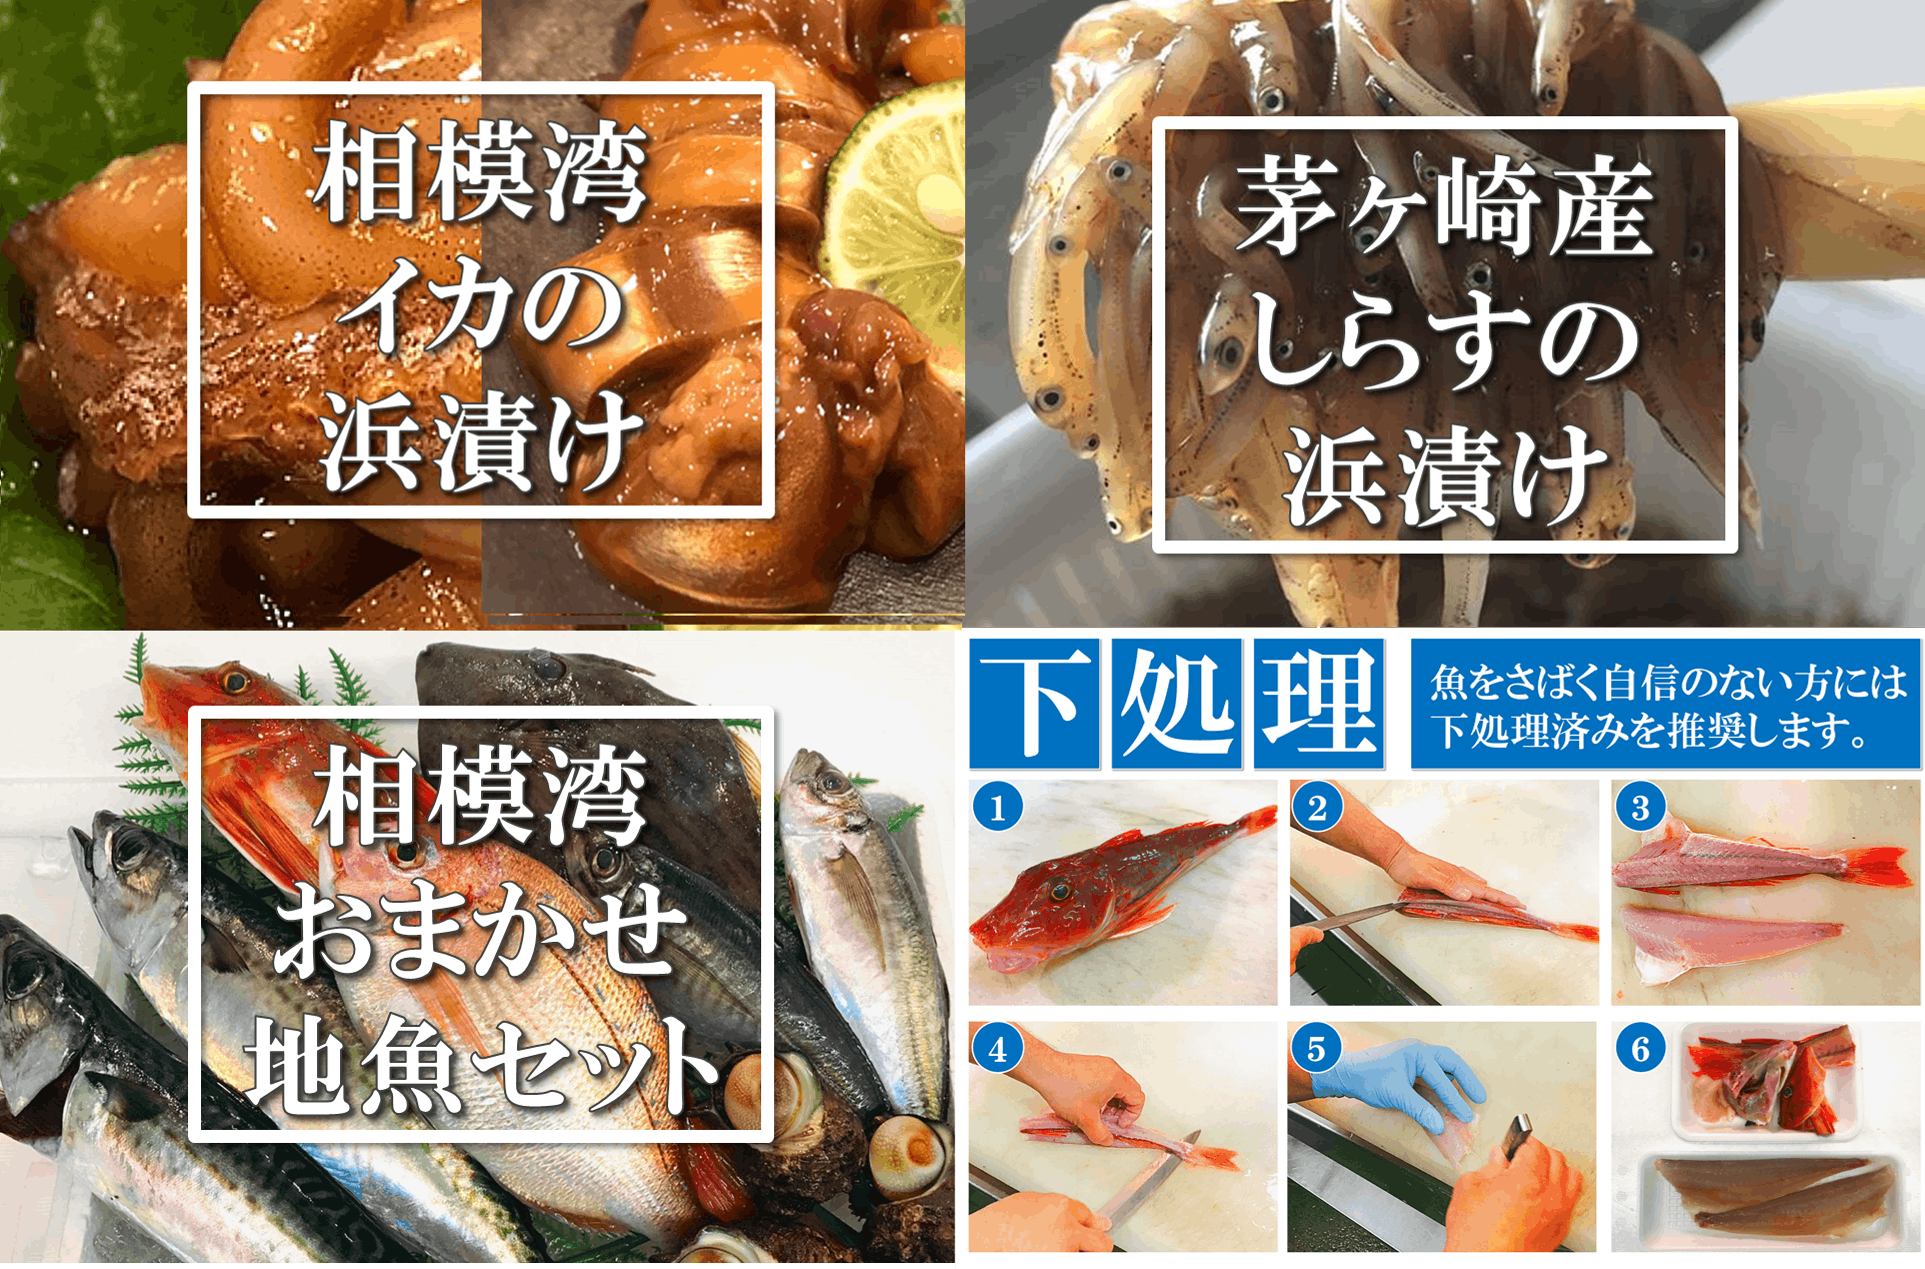 茅ヶ崎・魚卓の「イカの浜漬け」を商品化して、みんなに食べて欲しい！　CAMPFIRE　(キャンプファイヤー)